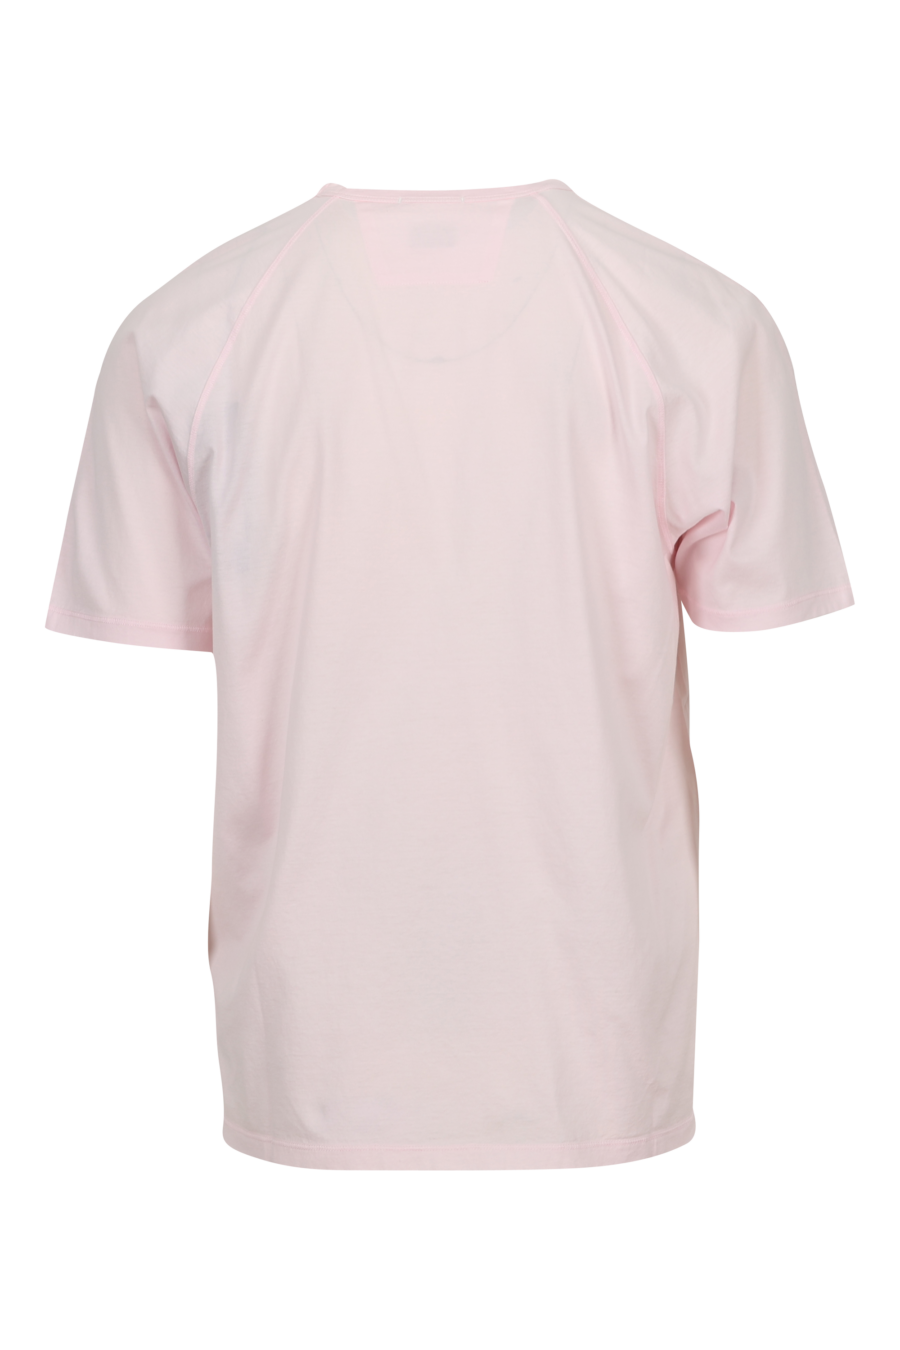 Camiseta rosa con minilogo "cp" centrado - 7620943760354 1